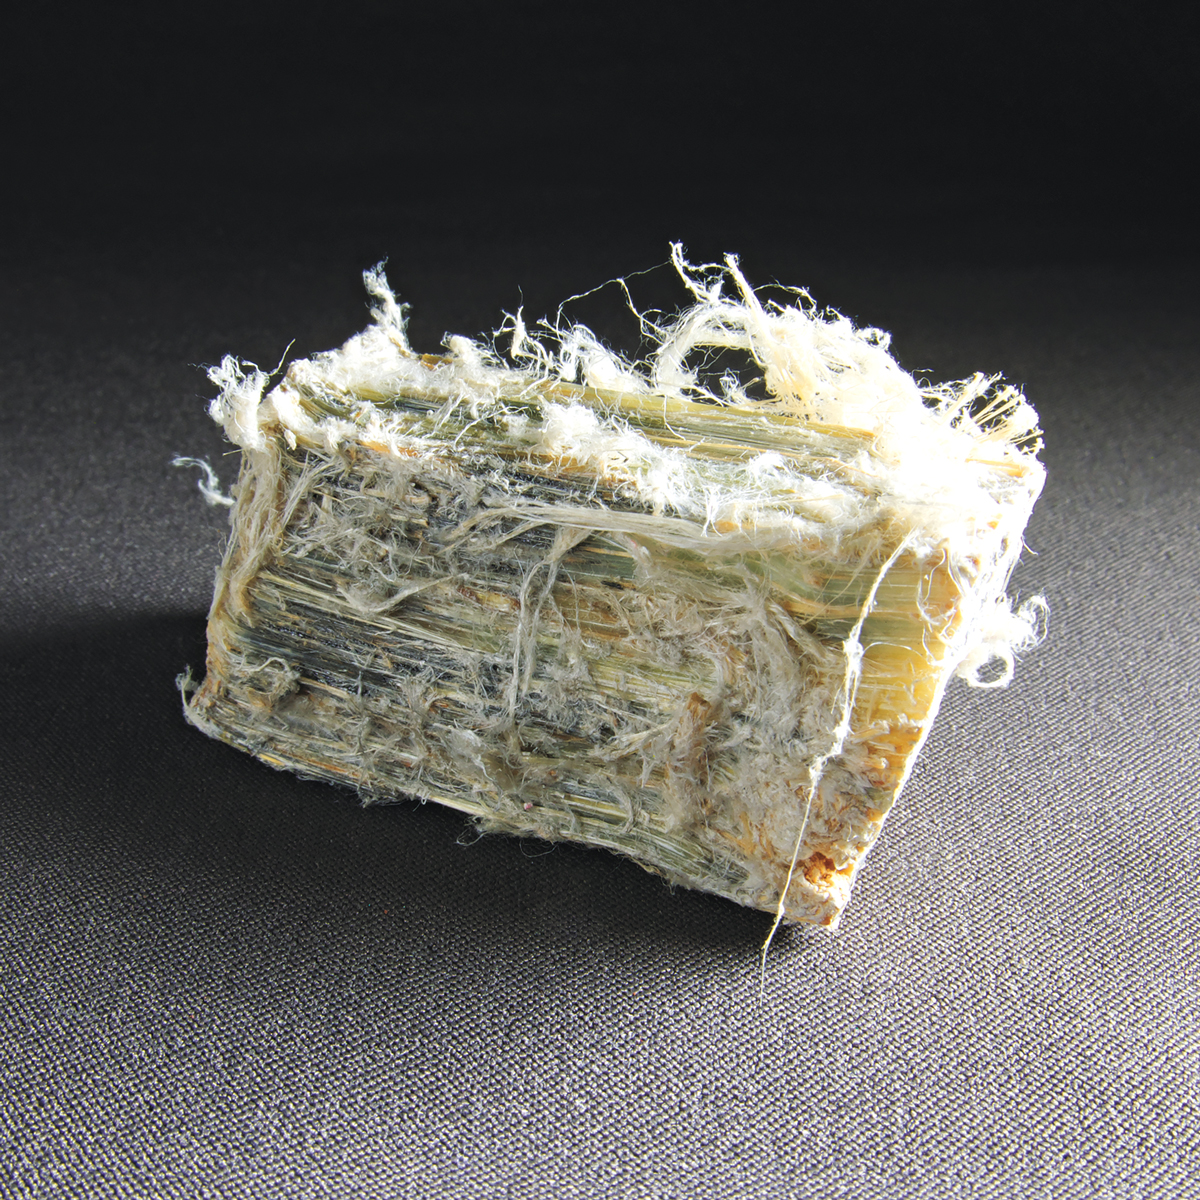 A piece of chrysotile asbestos.